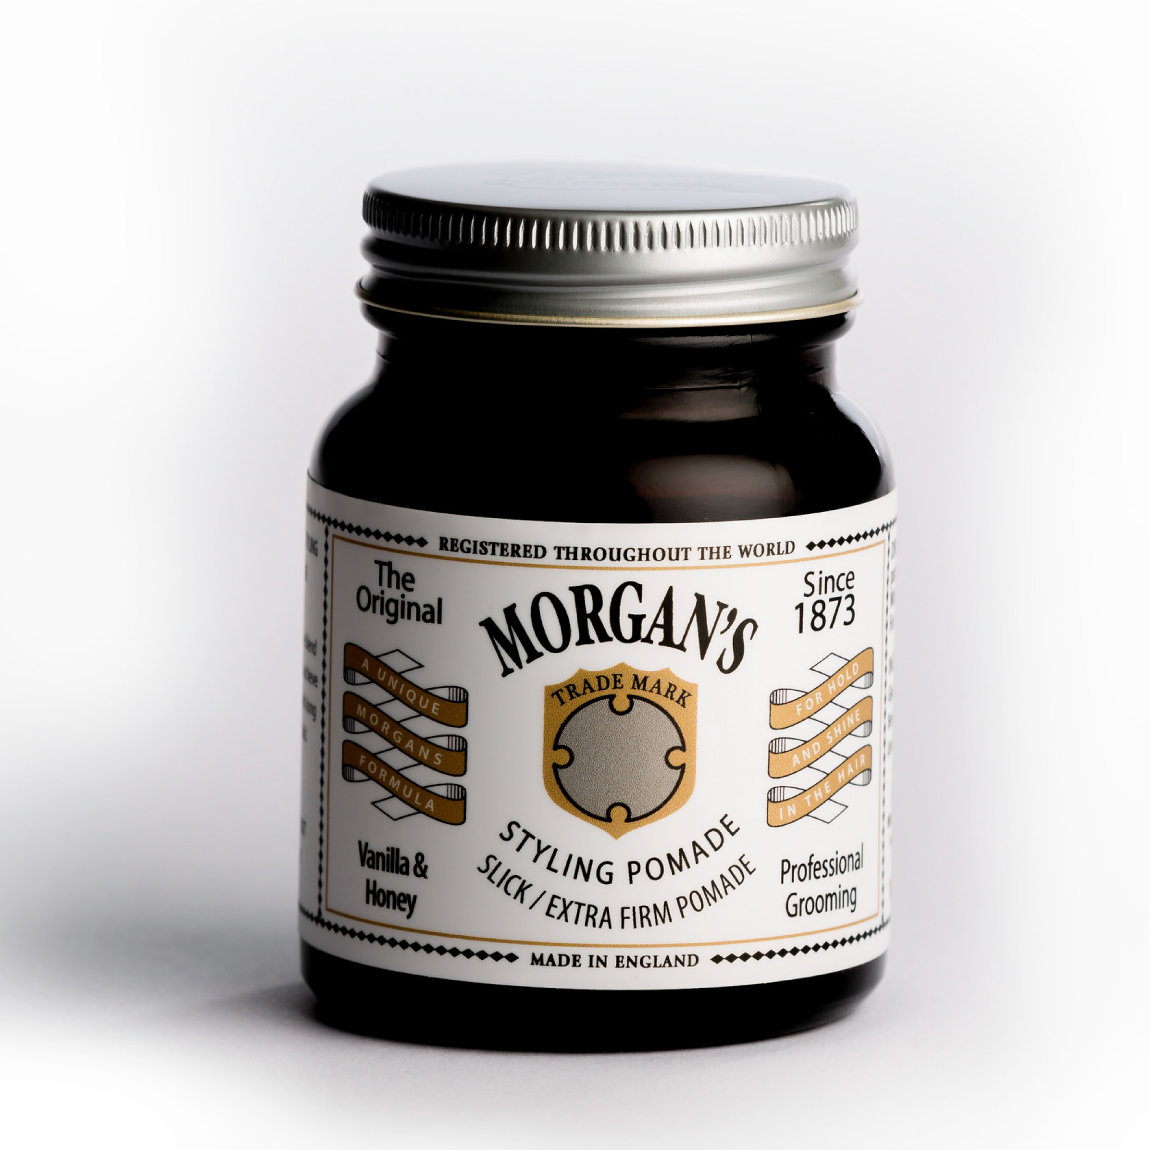 Morgan's Vanilla & Honey Pomade - Помада для укладки Экстра сильной фиксации без блеска 100гр